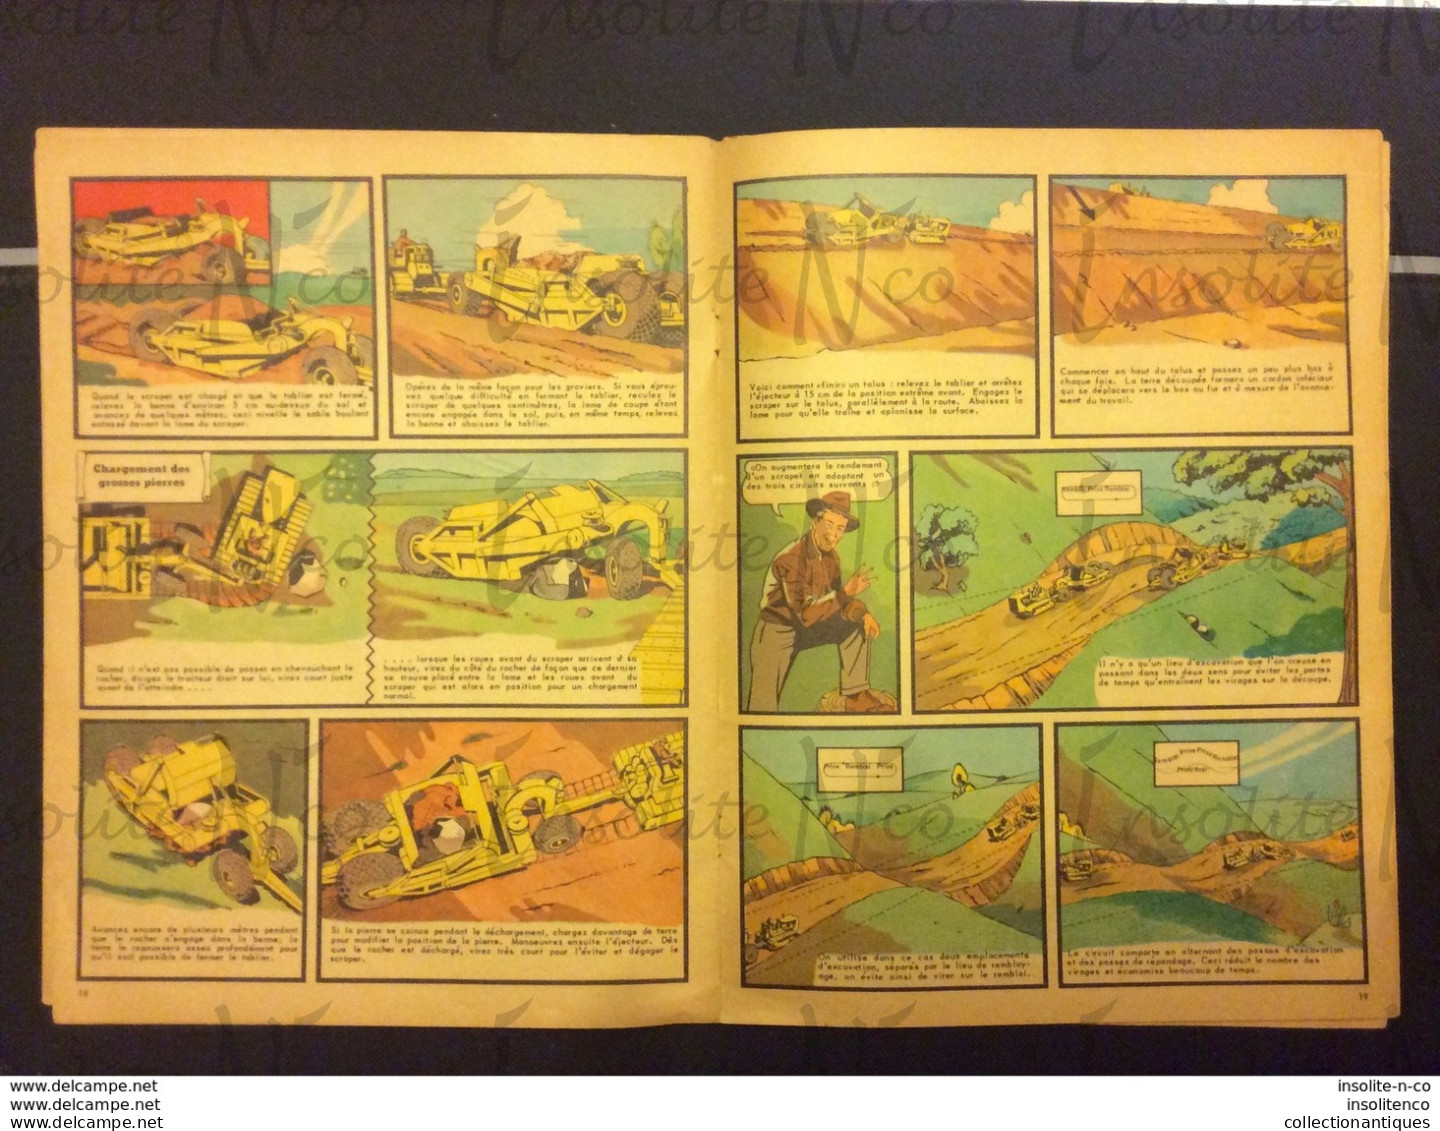 Très rare guide pour le conducteur de tracteurs, scrapers, rippers, bulldozers Caterpillar 1950 en BD en français